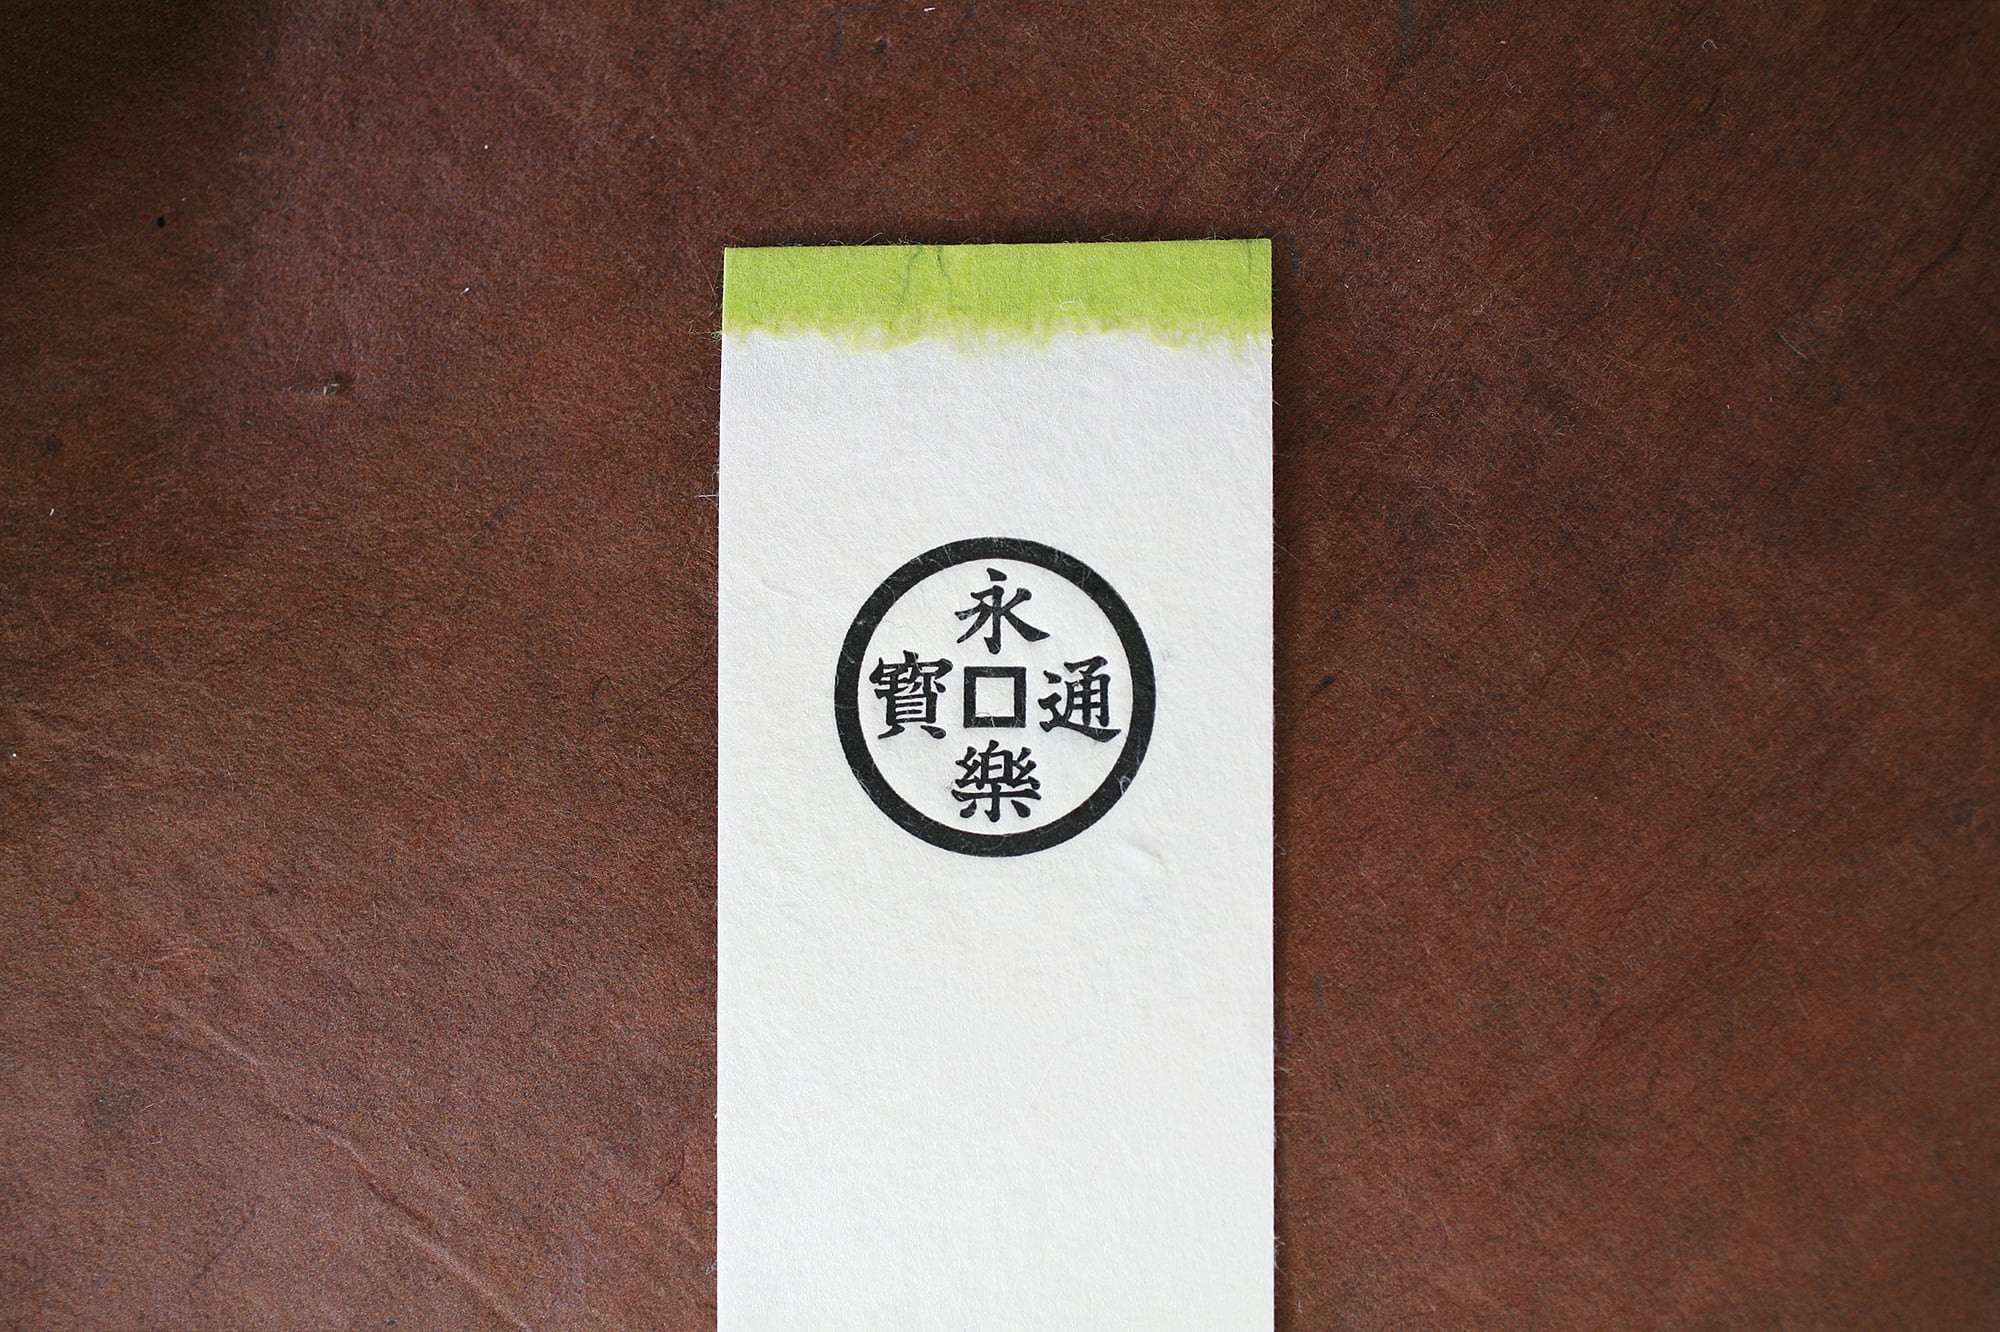 半額 日本職人が作る 食品サンプル しおり にぎり寿司 ハマチ IP-682 ブックマーカー 栞 シオリ 文具 グッズ 和雑貨 日本土産 